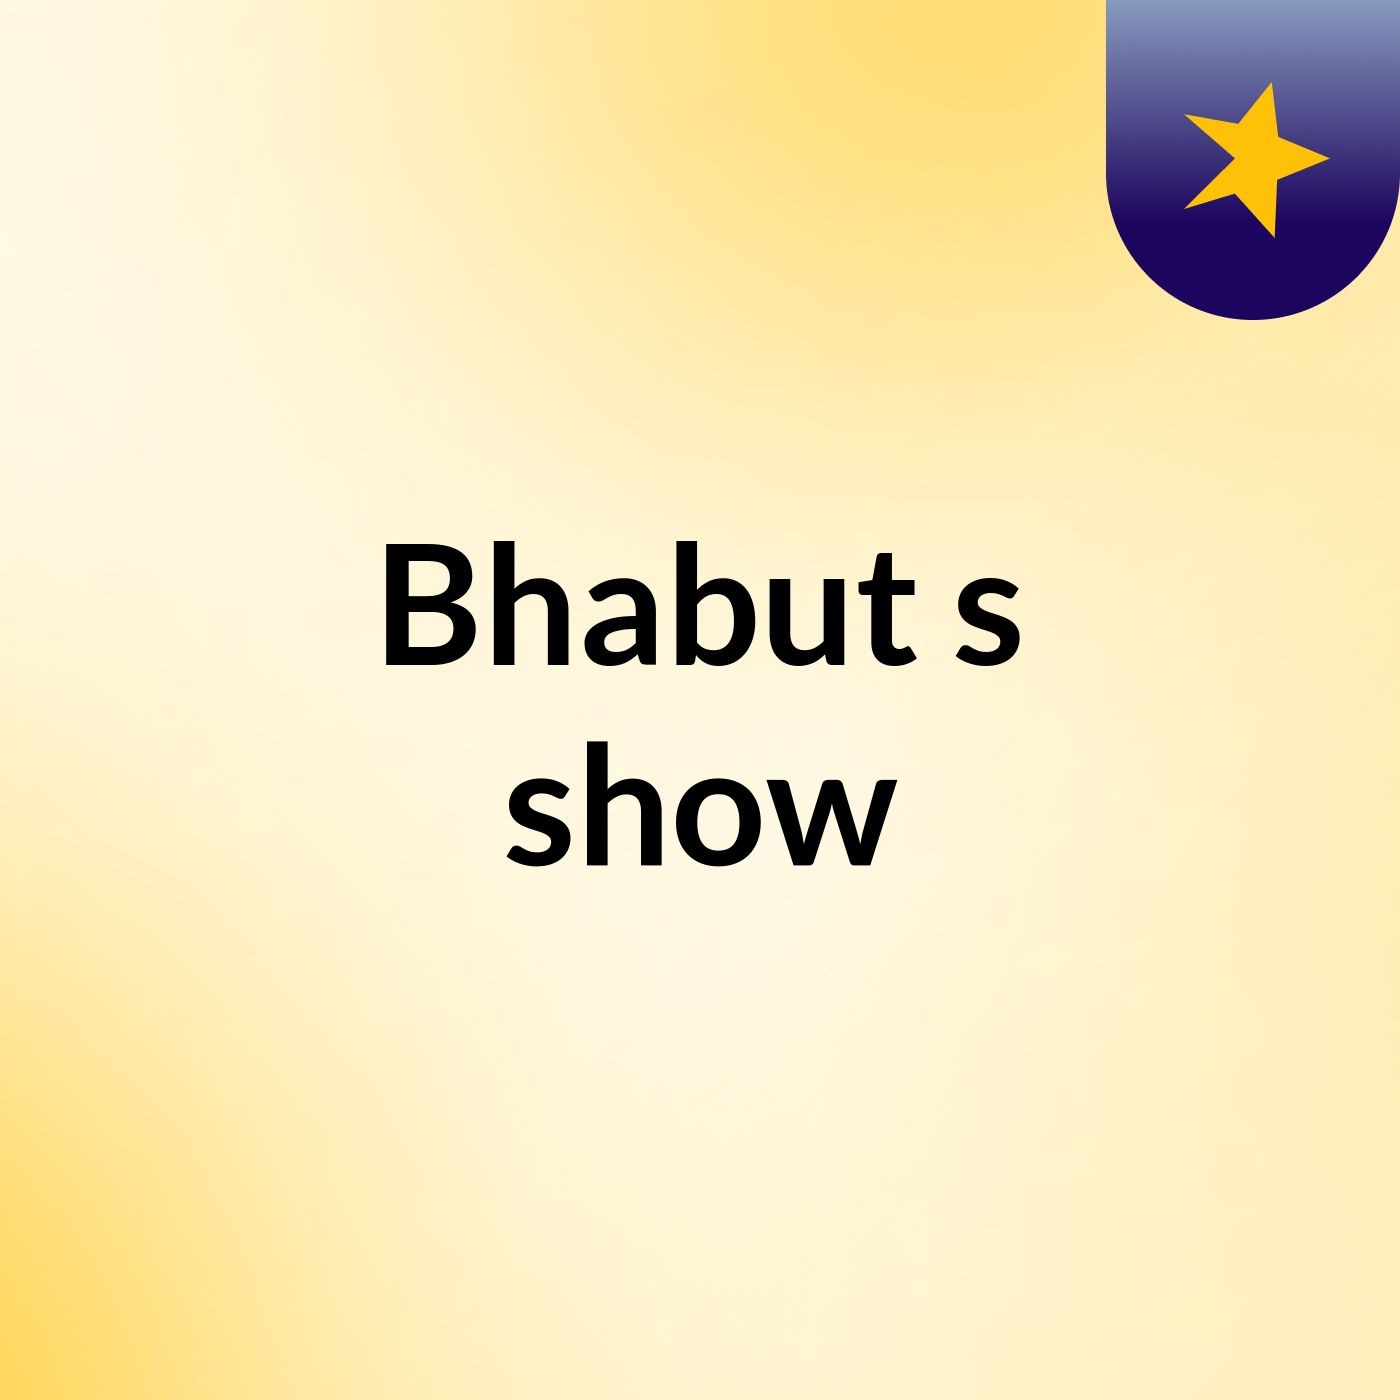 Bhabut's show